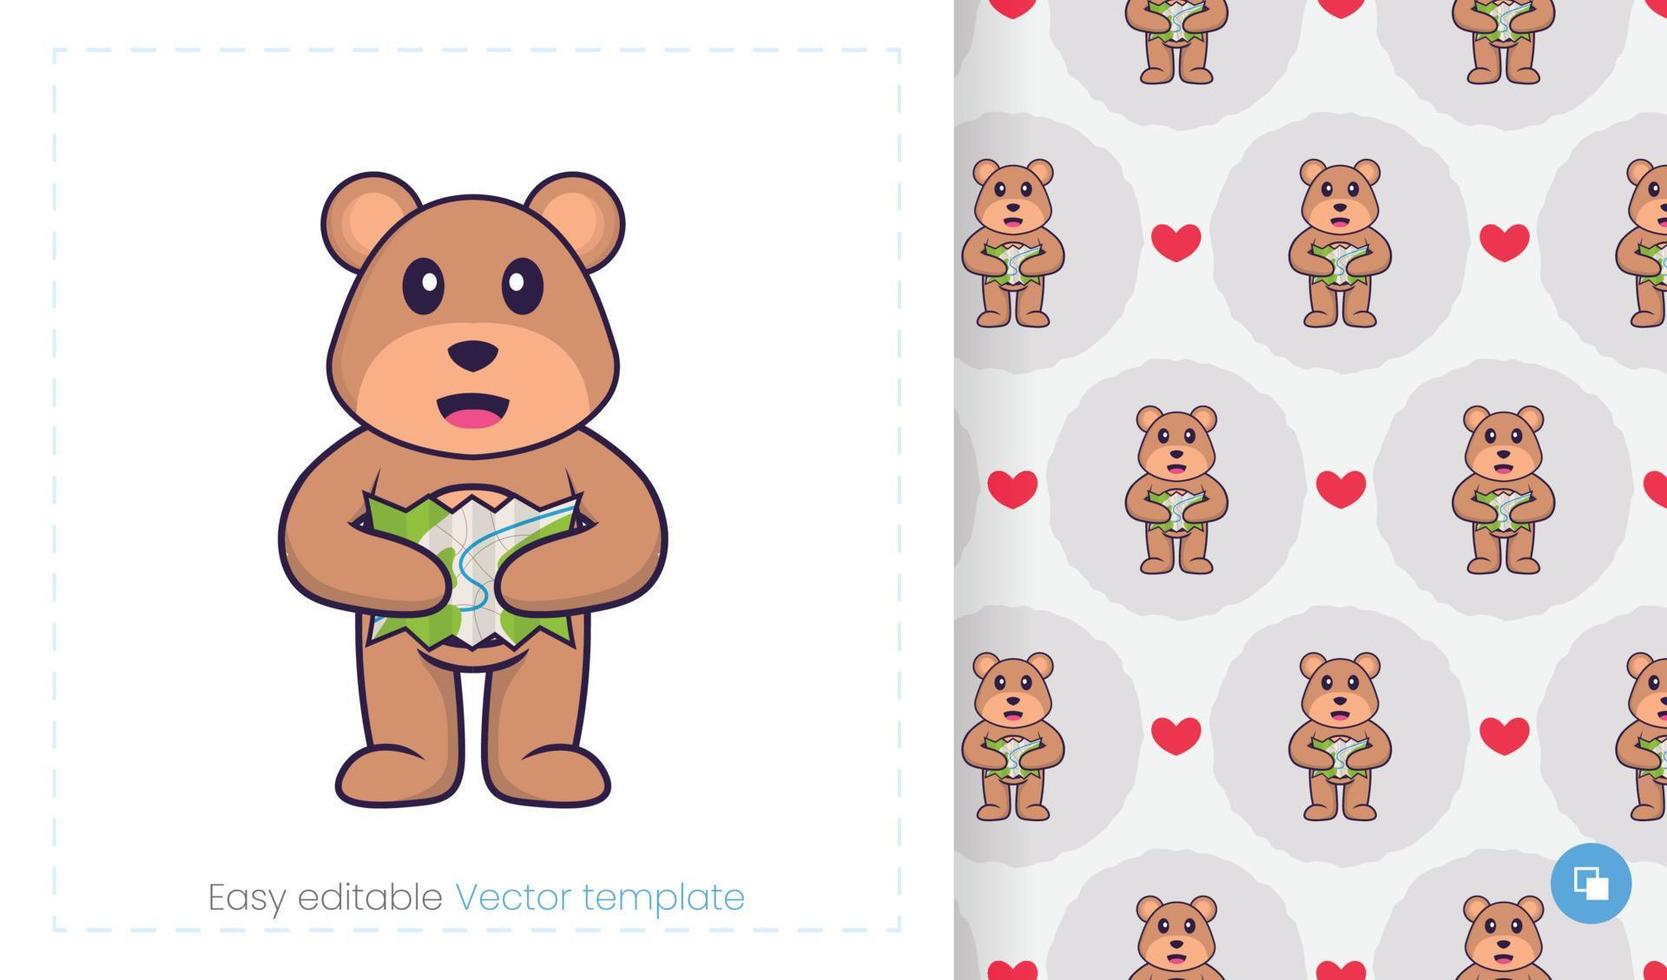 simpatico personaggio mascotte orso. può essere utilizzato per adesivi, motivi, toppe, tessuti, carta. illustrazione vettoriale